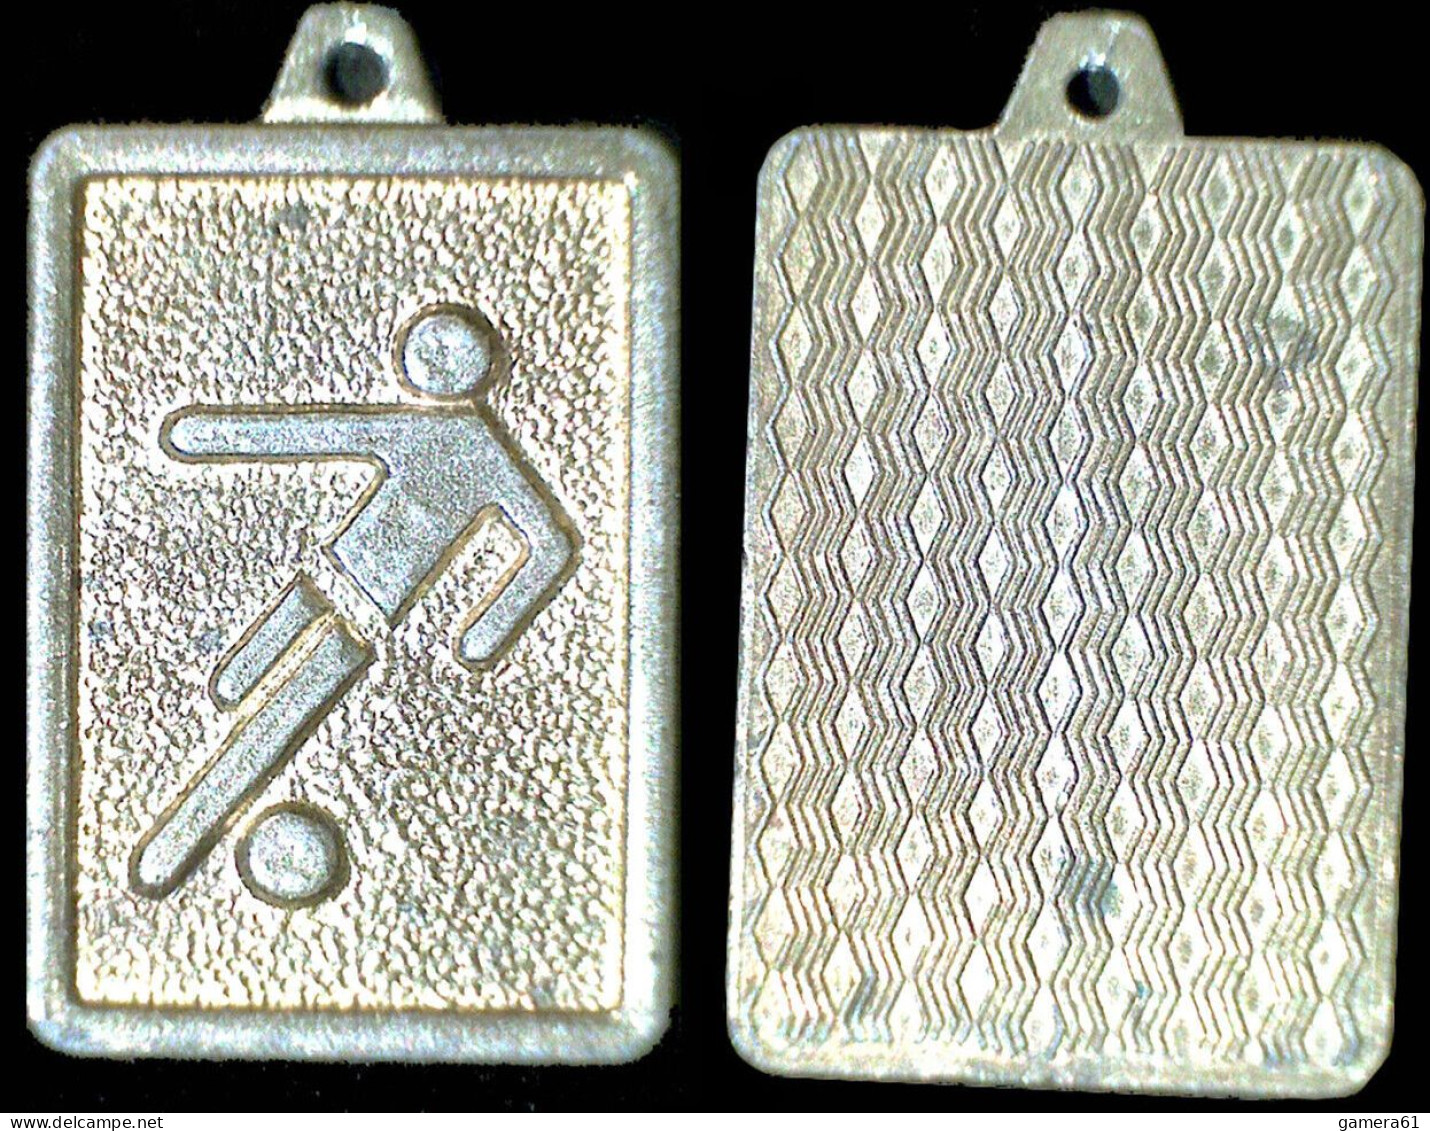 KINDER METALFIGUREN Medaglia Anhänger Metal Kinder 1977 FOOTBALL ORO GOLD RRRRR! - Metallfiguren